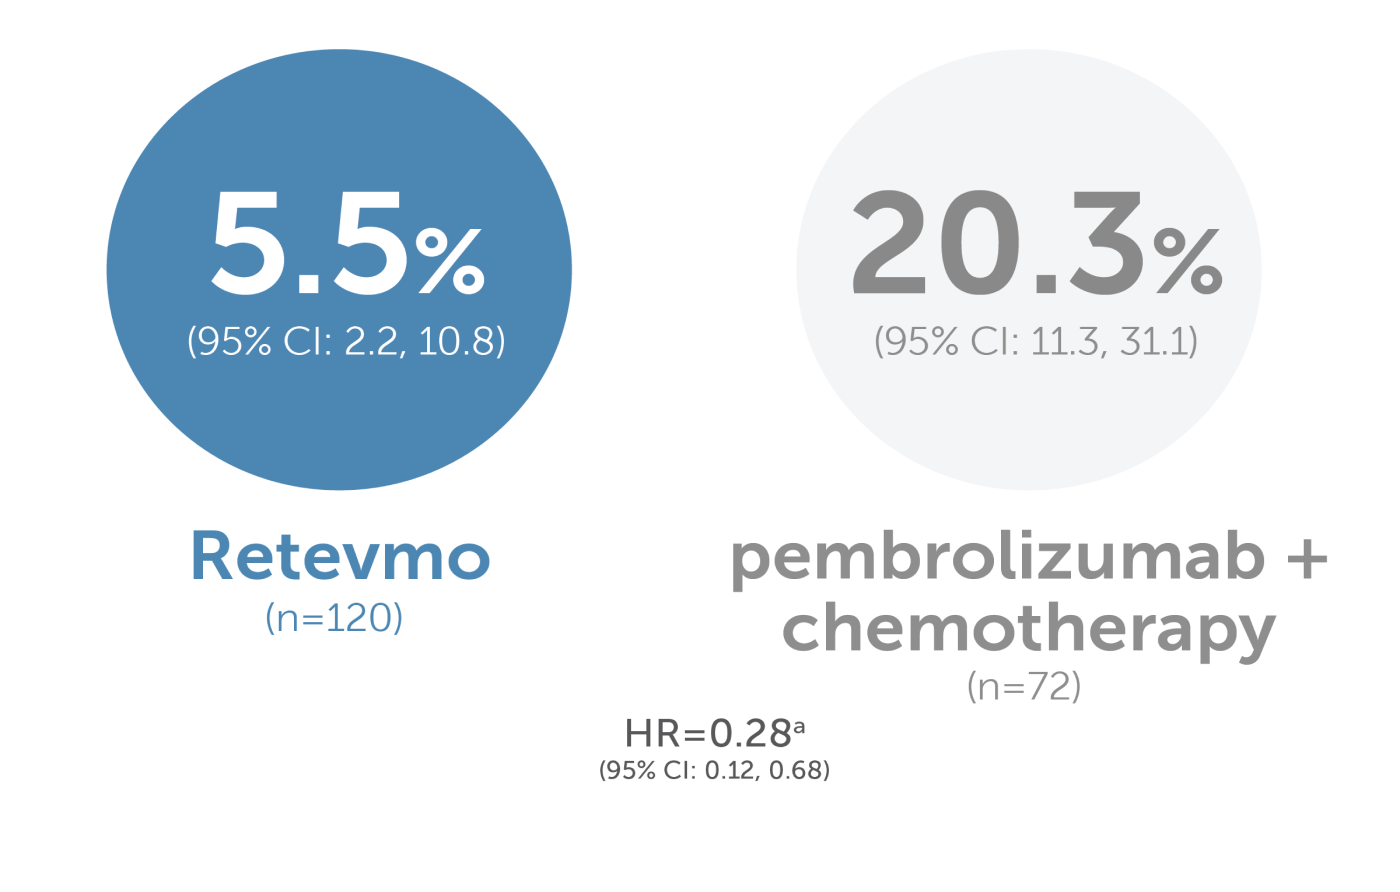 Libretto 431 5.5% Retevmo, 20.3% pembrolizumab + chemotherapy